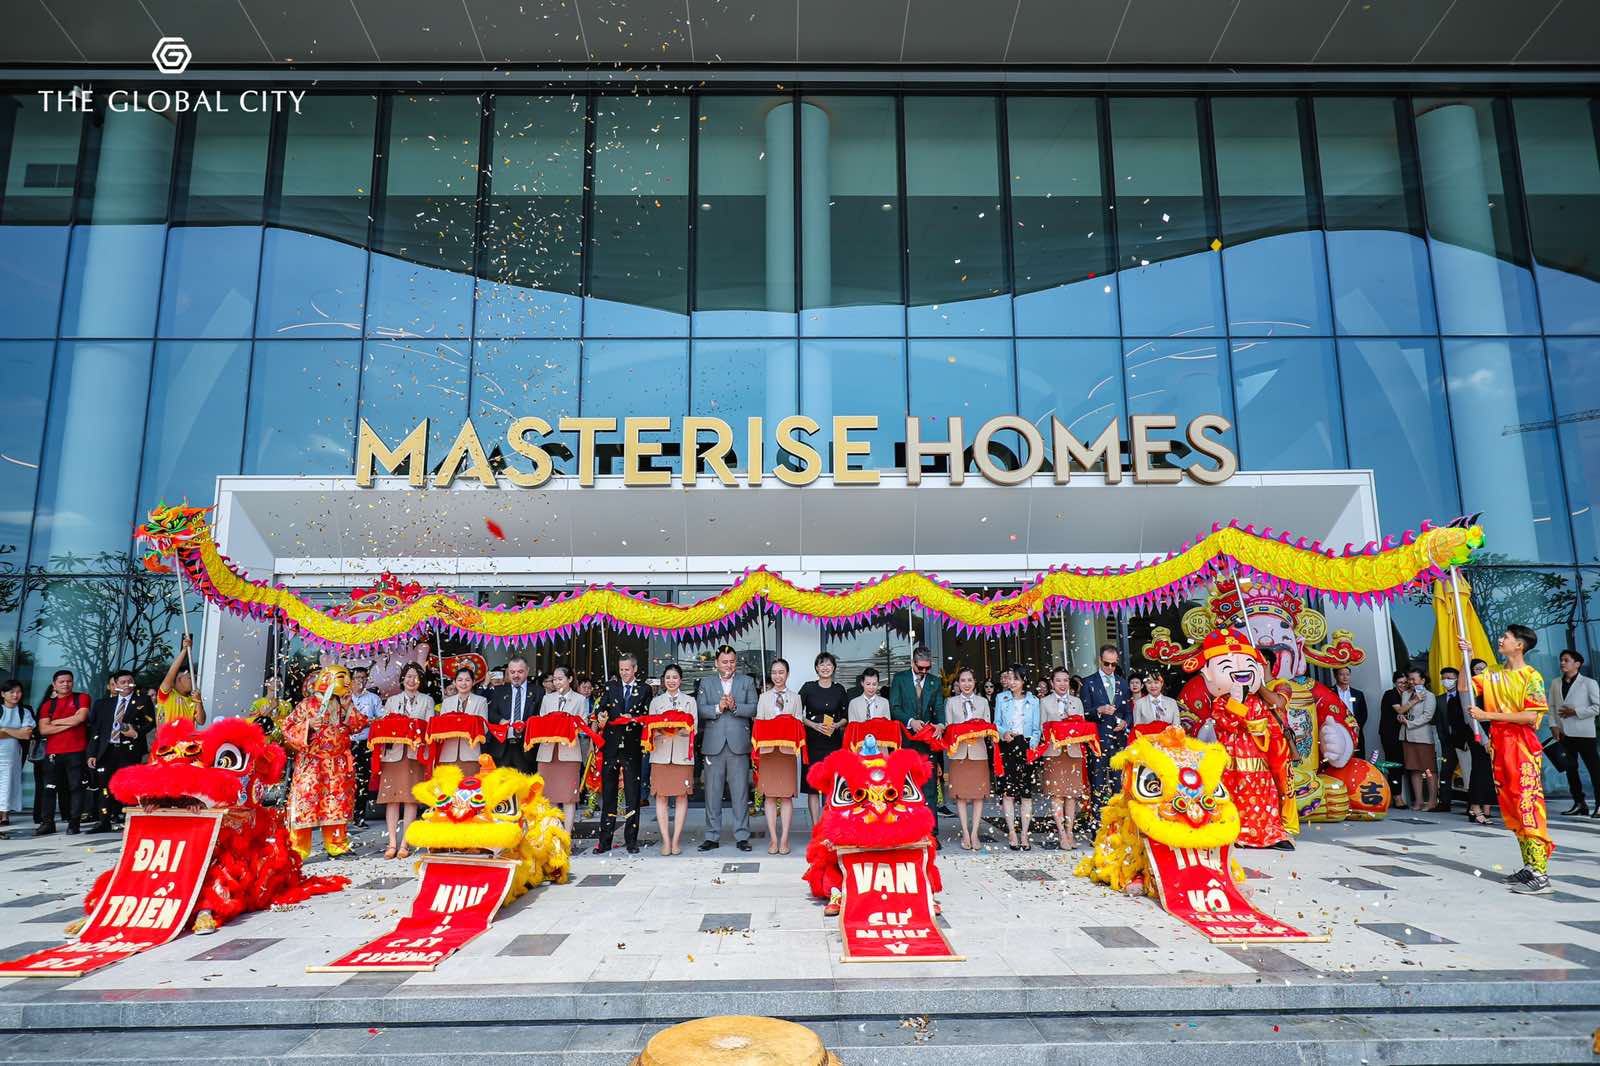 Khai trương nhà mẫu The Global City lớn nhất việt Nam của Masterise Homes với quy mô 10,000m2